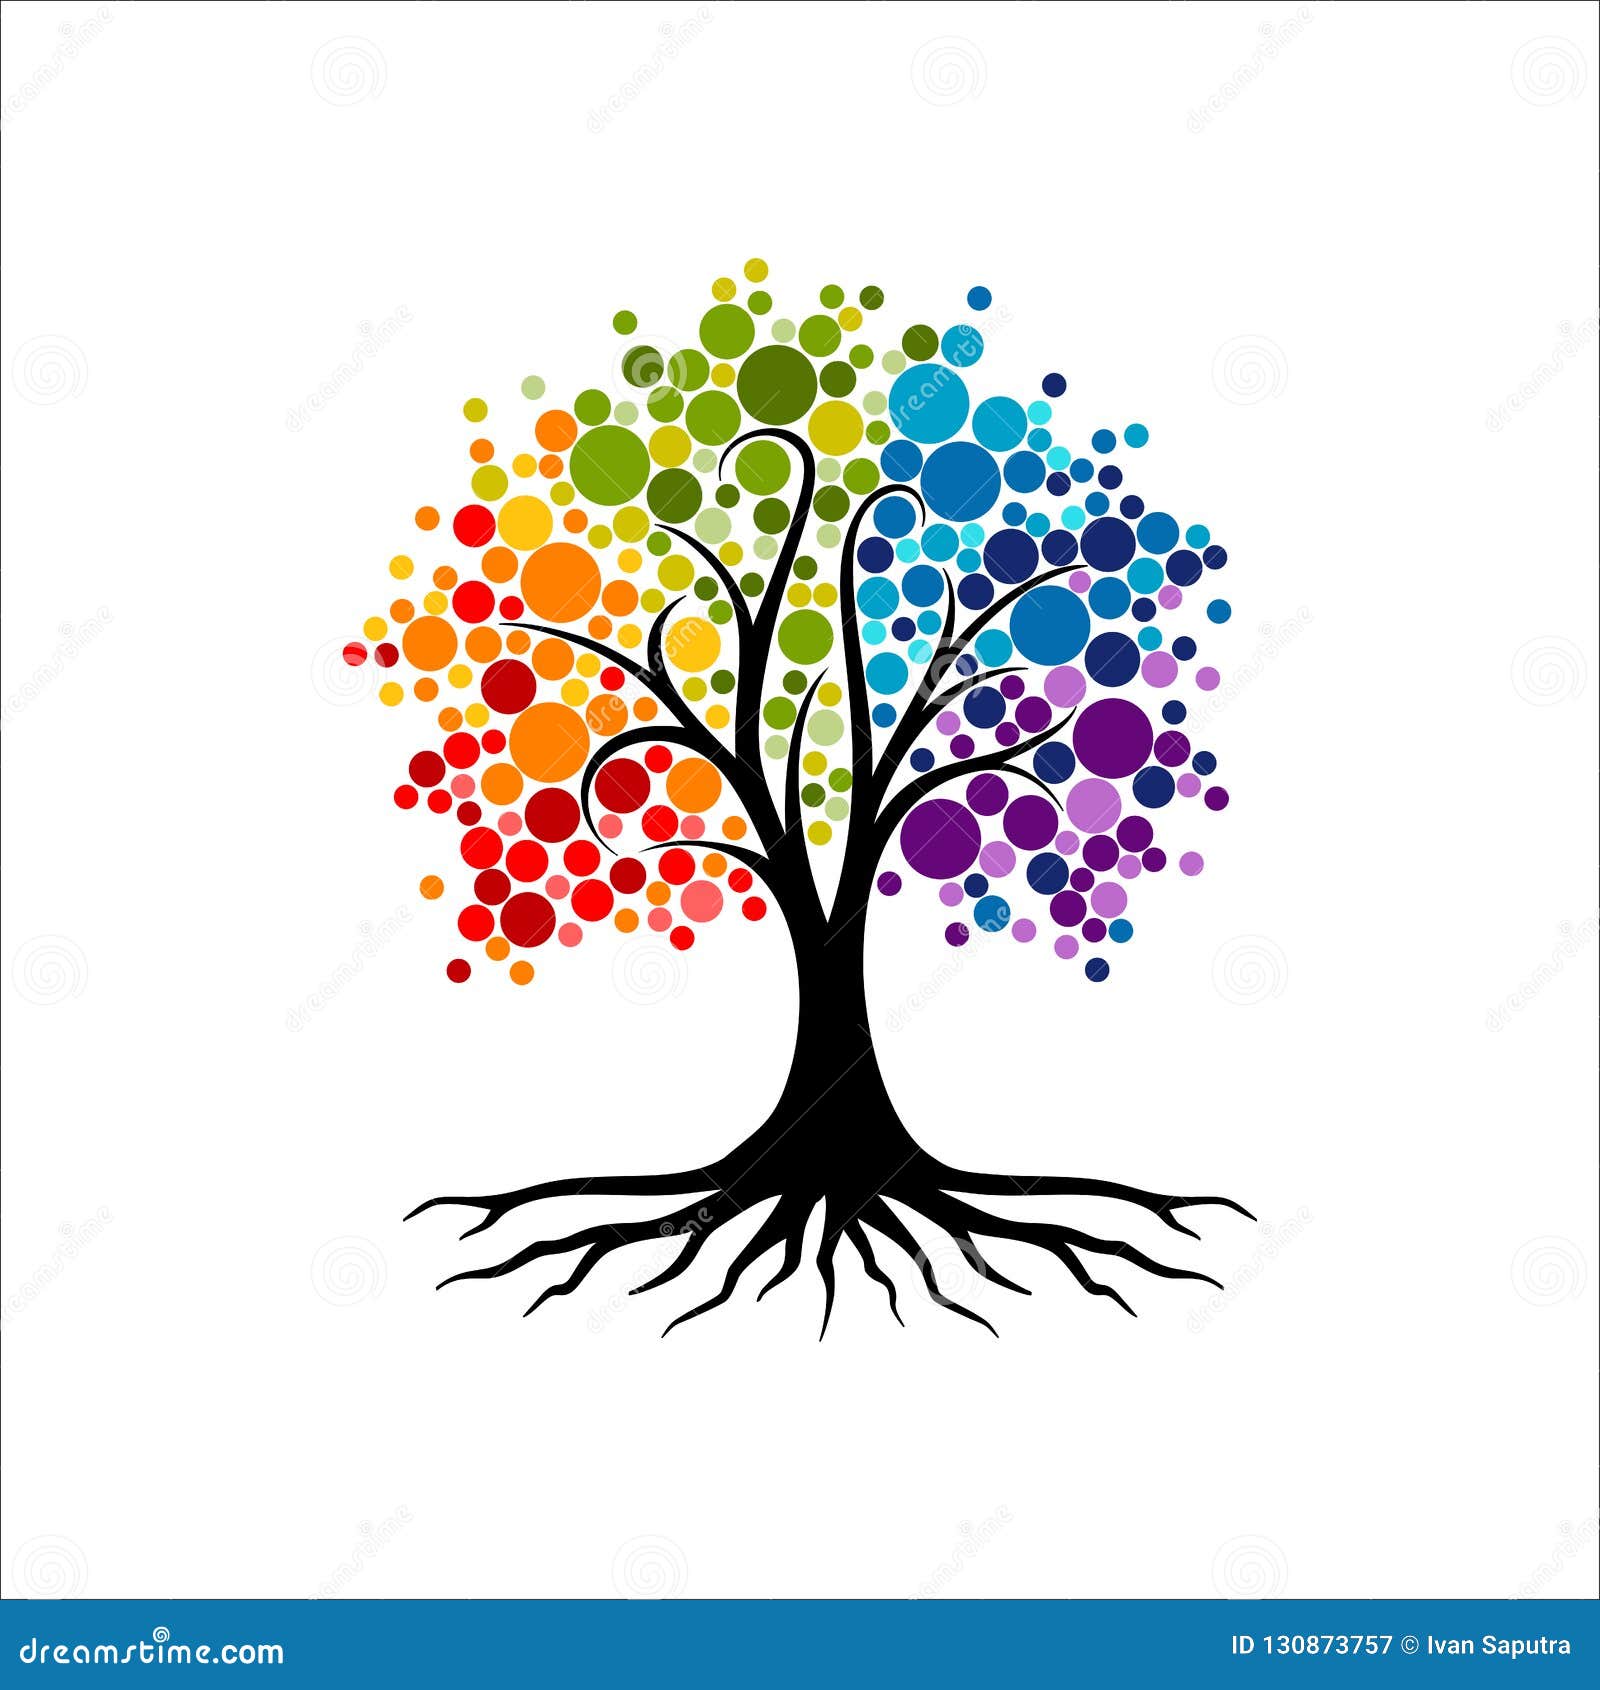 abstract vibrant tree logo , root  - tree of life logo  inspiration